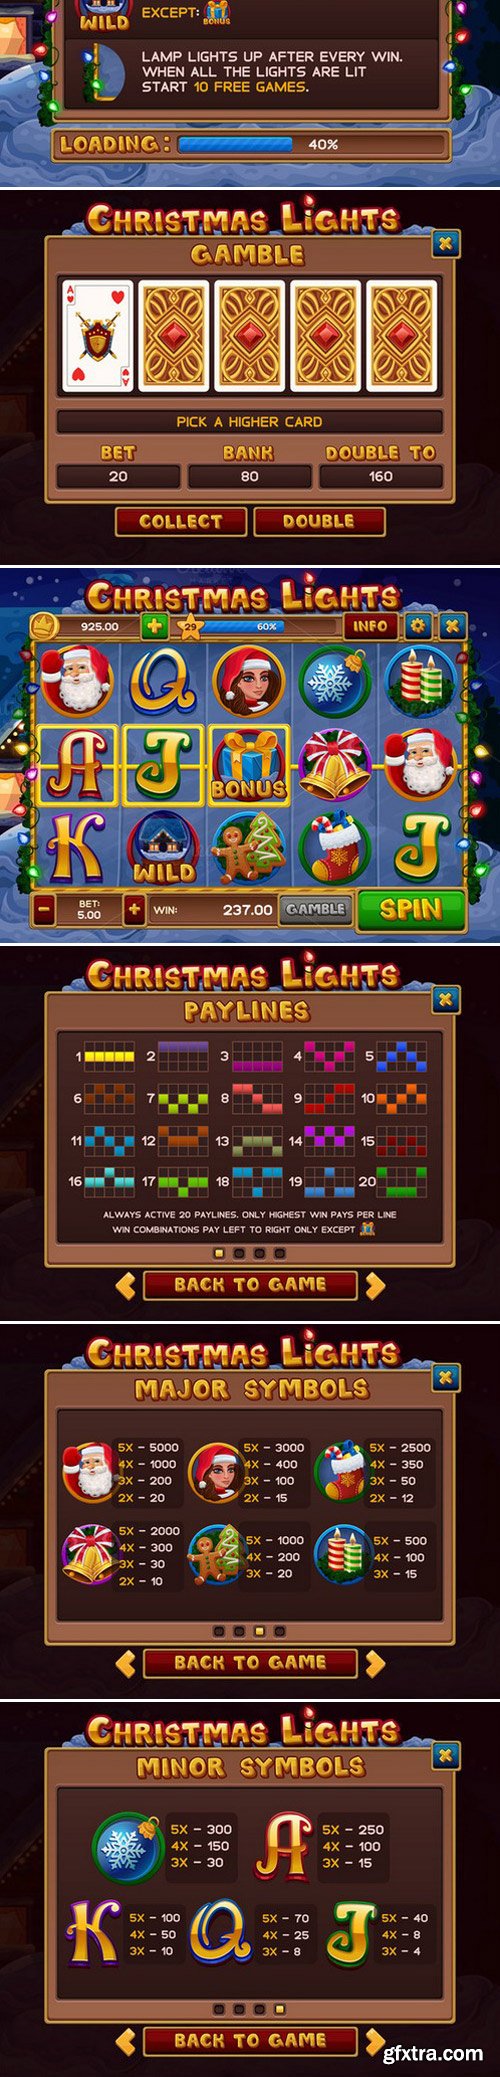 CM - Christmas lights slots game kit 431548